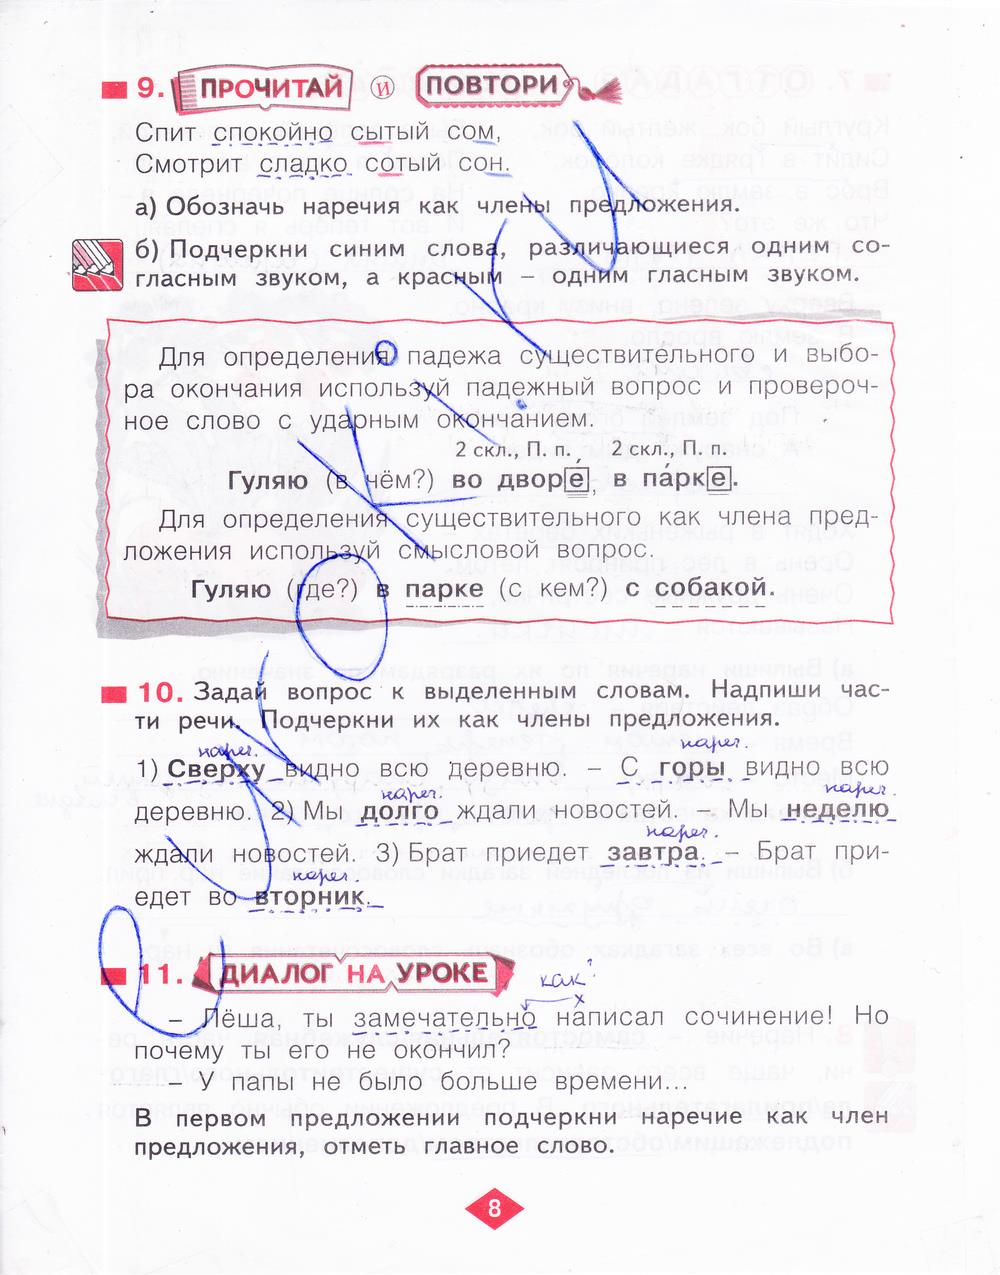 гдз 4 класс рабочая тетрадь часть 4 страница 8 русский язык Нечаева, Воскресенская